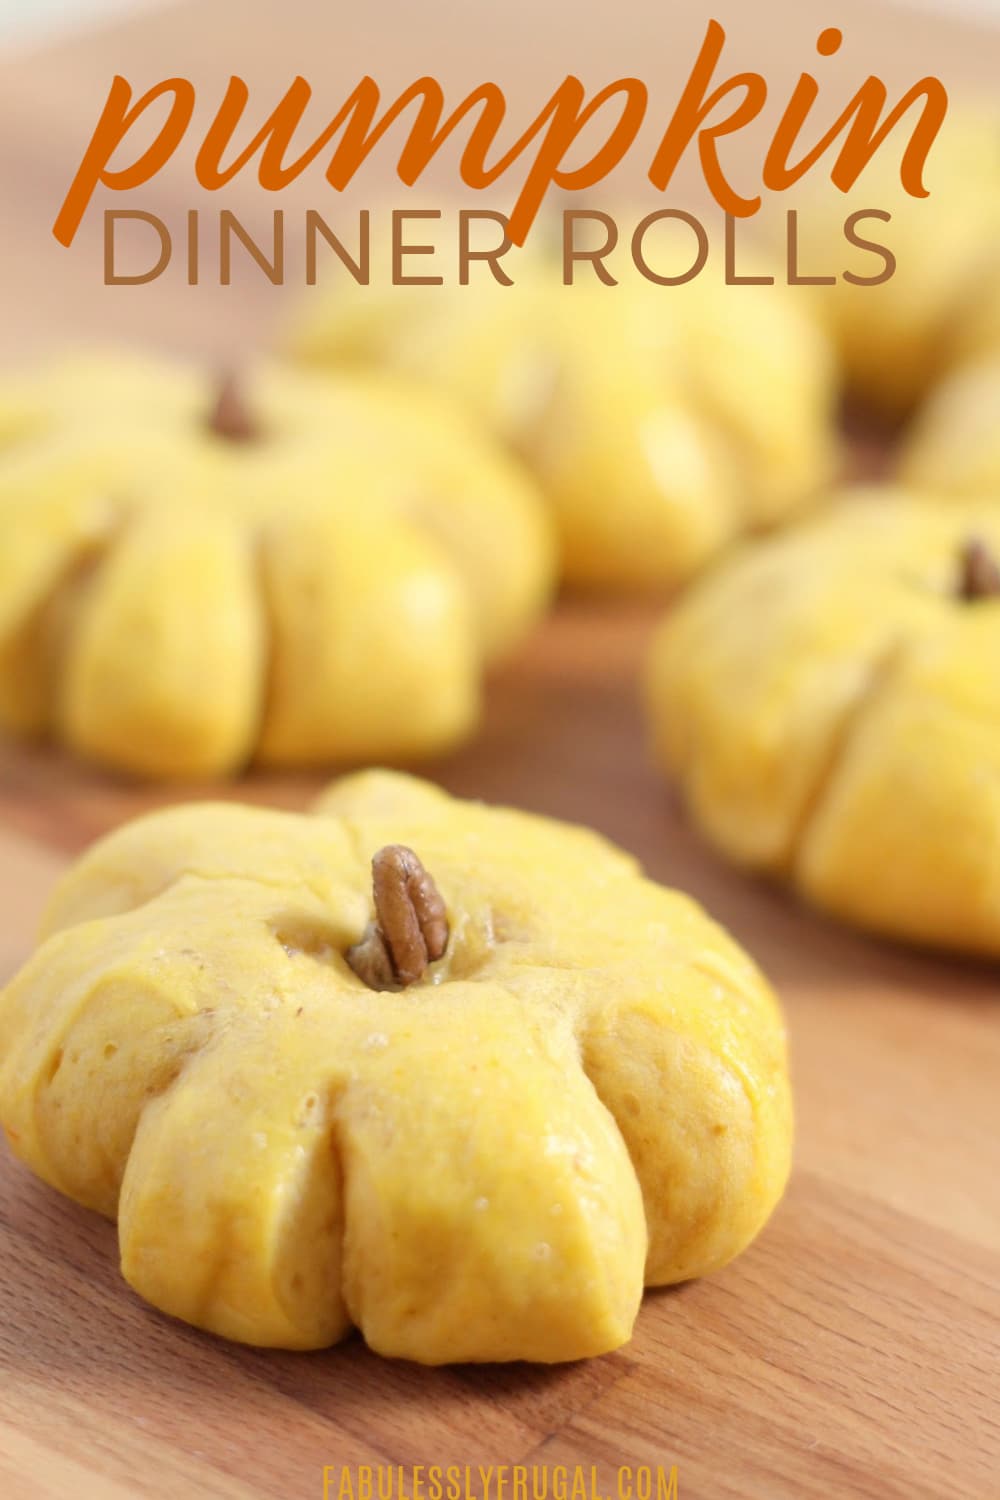 Pumpkin shaped dinner rolls